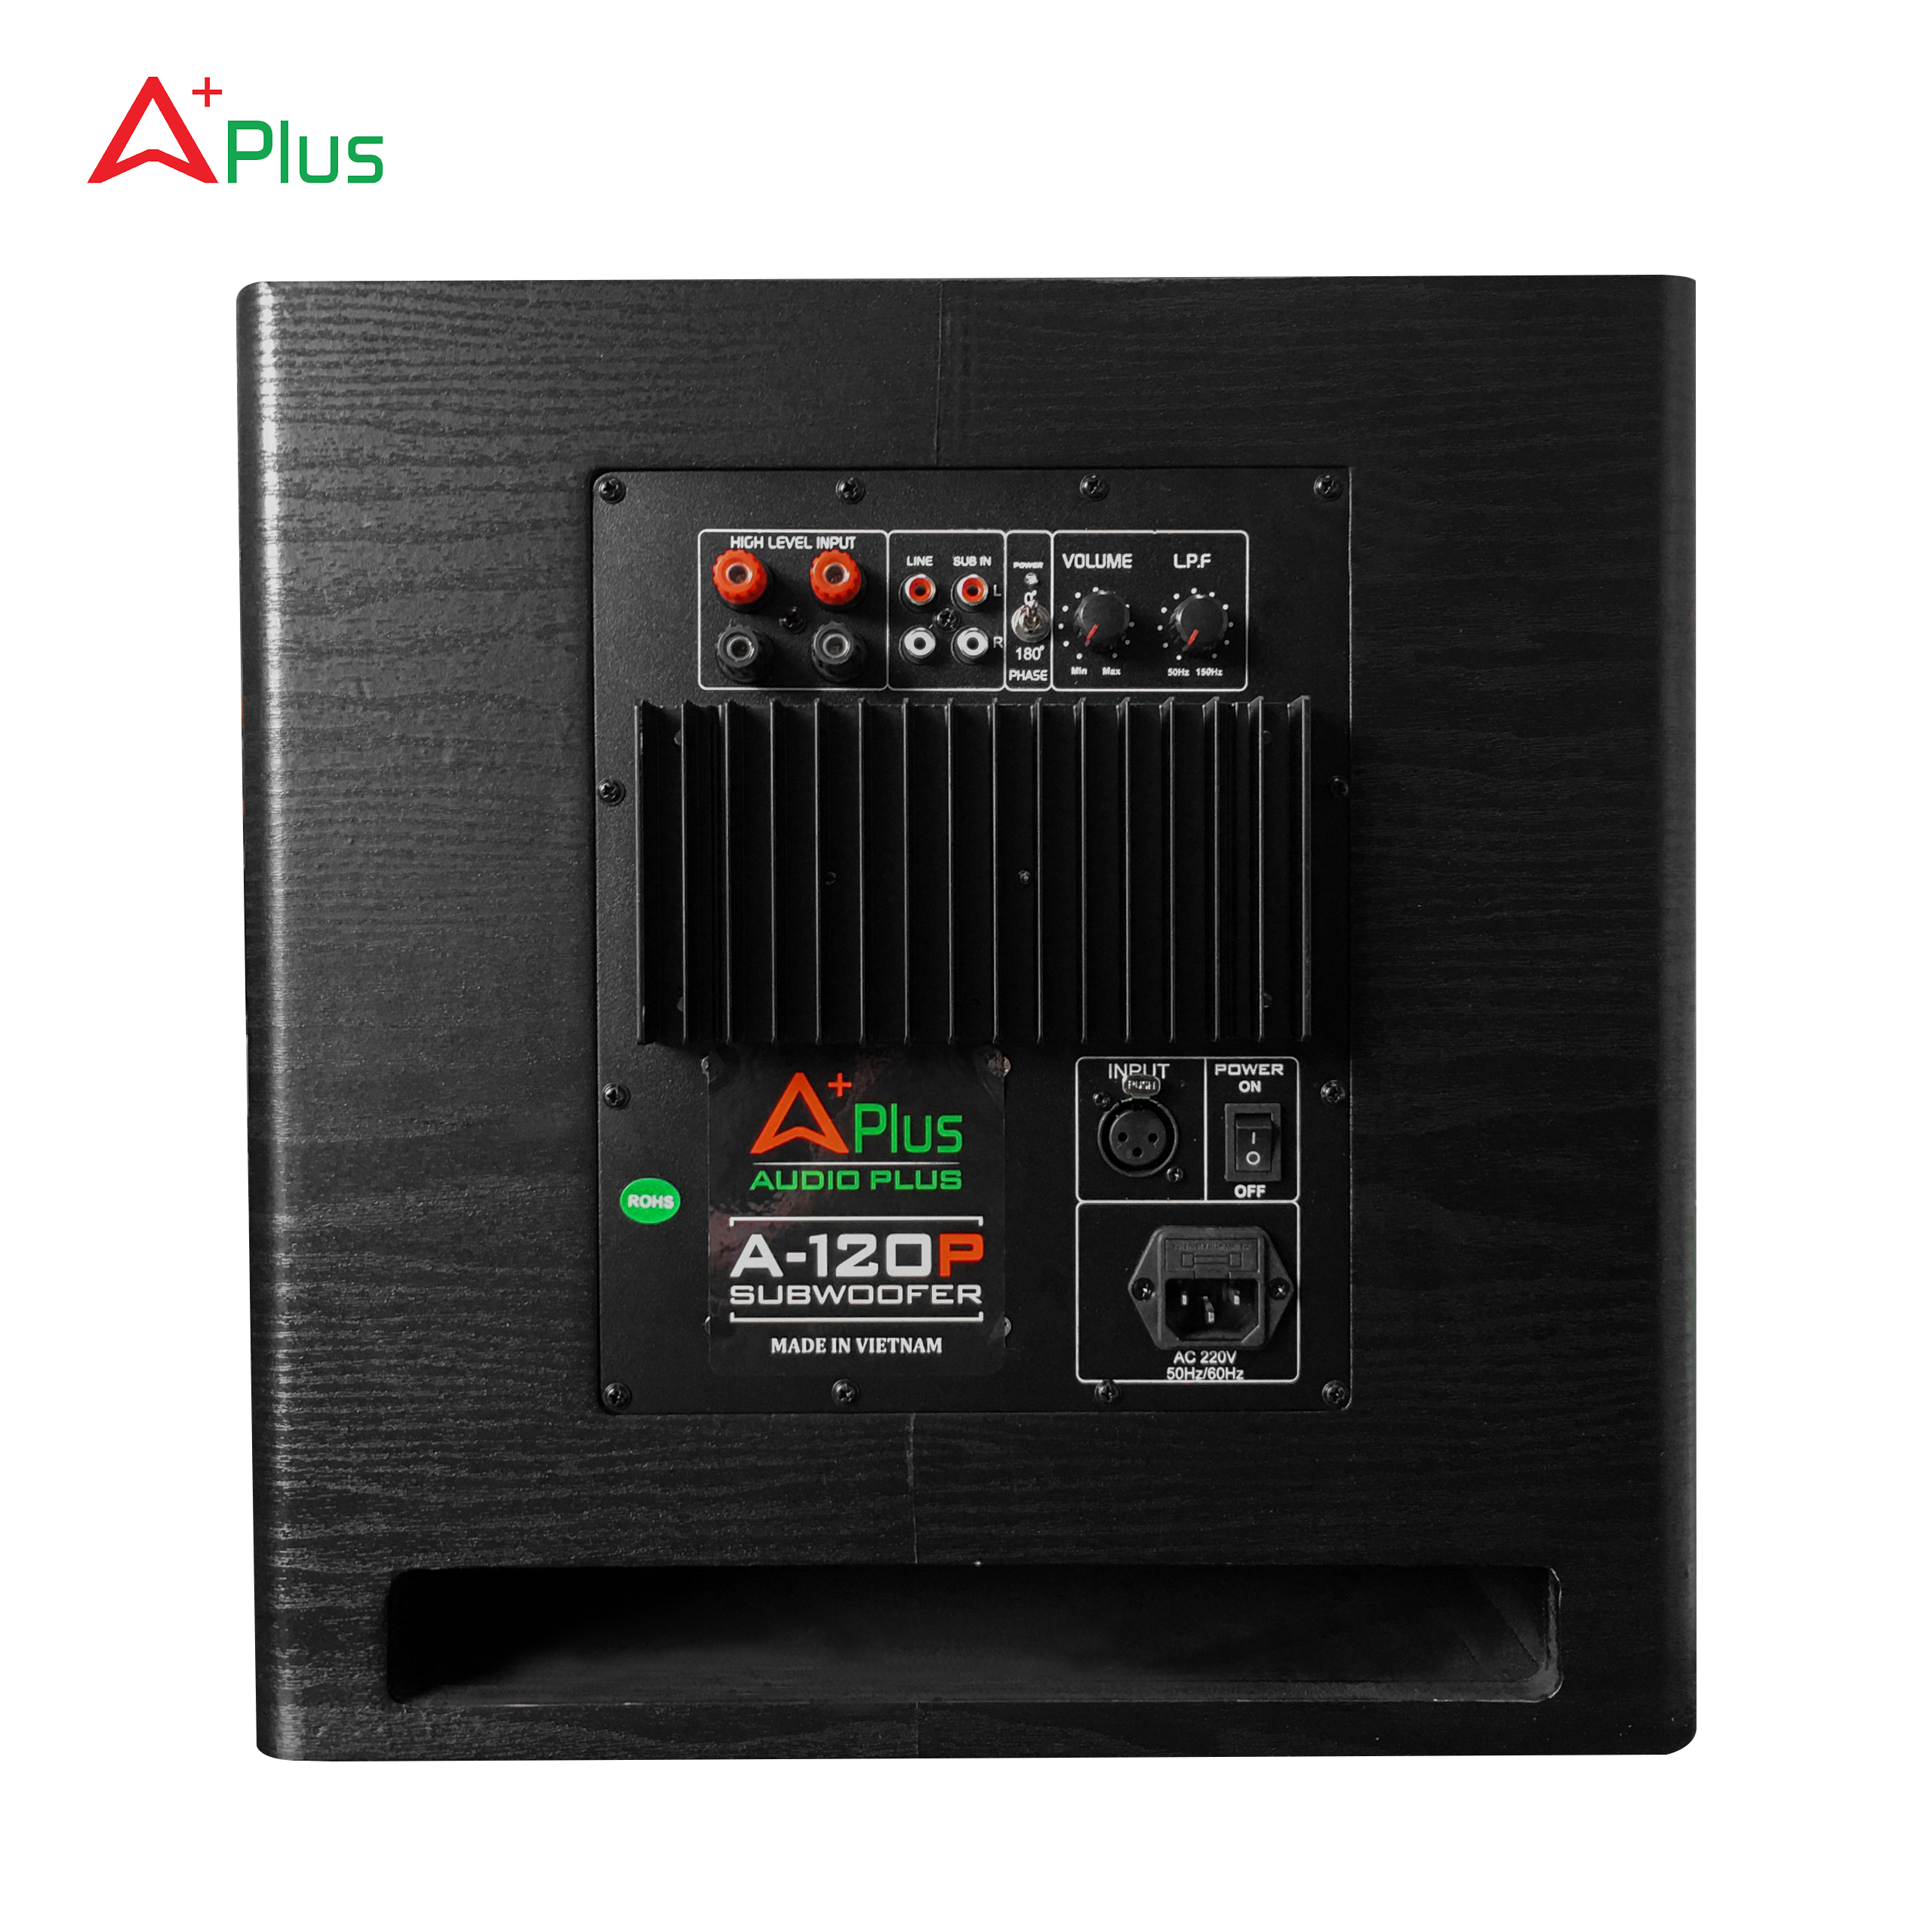 Loa trầm điện APlus A 120P 3 tấc (bass 30)  - loa sub điện đánh cực hay, dễ dàng ghép với dàn âm thanh nghe nhạc, karaoke, xem phim - Hàng chính hãng